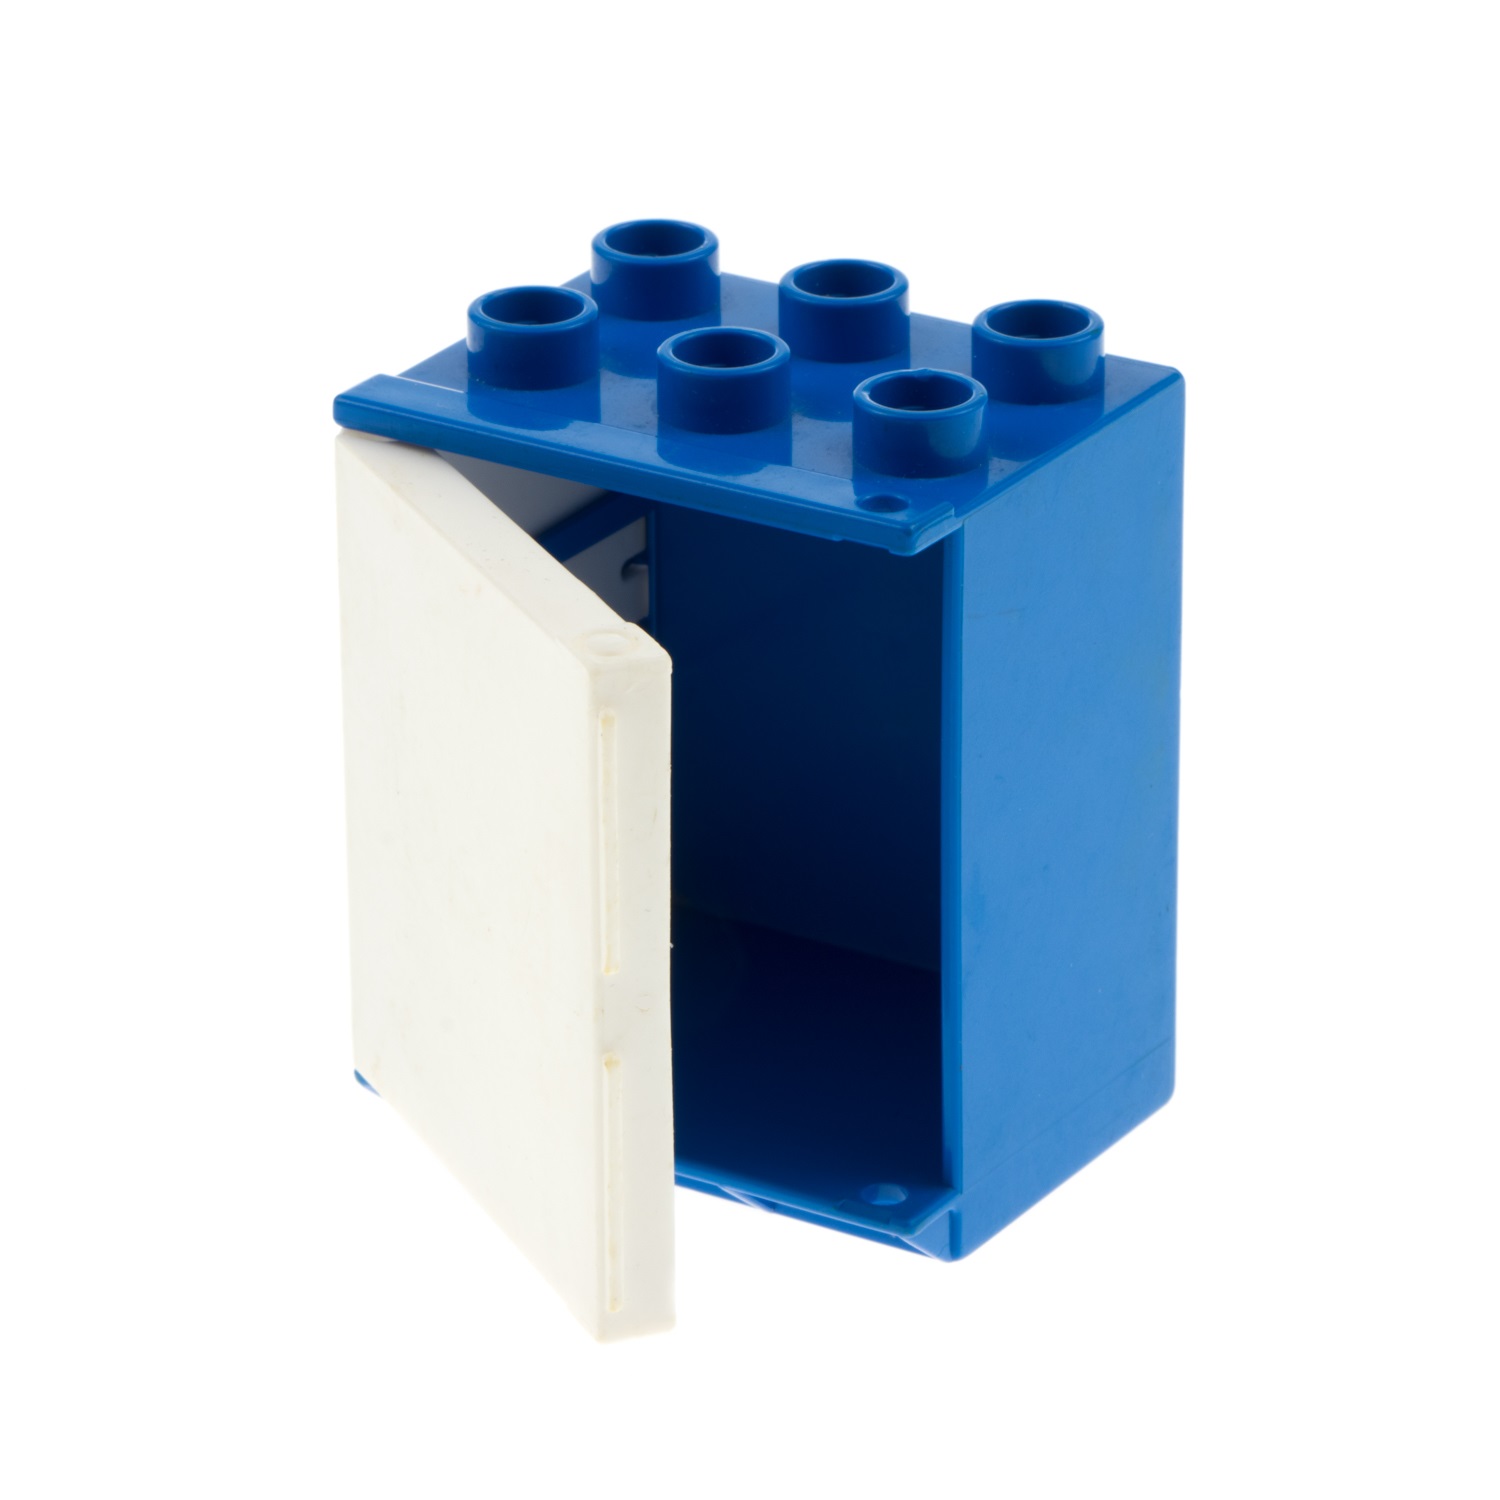 1x Lego Duplo Möbel Kühlschrank blau weiß Eis Schrank Küche 4914c01